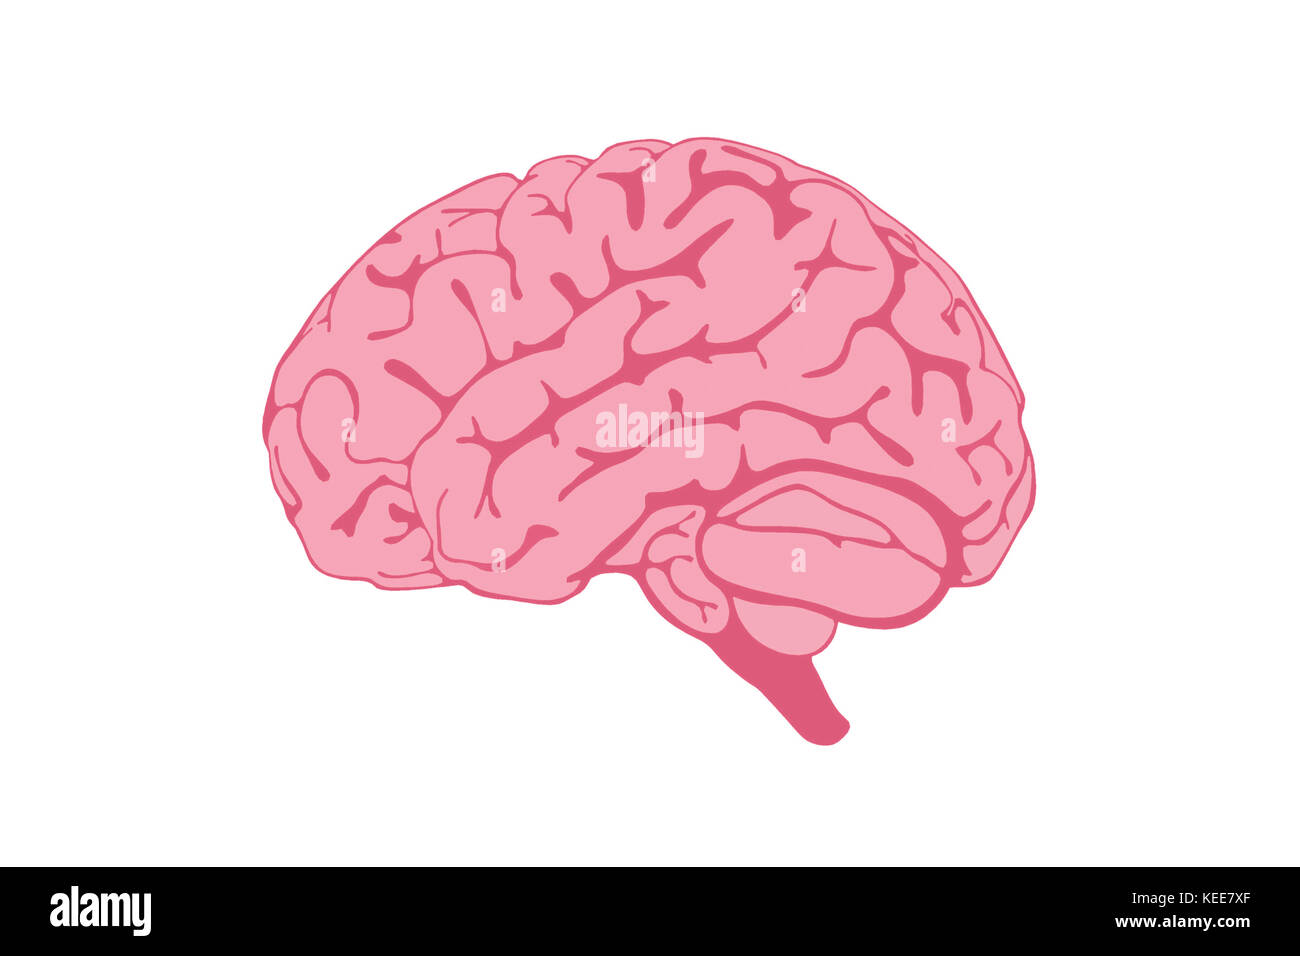 Illustrazione del cervello umano isolata su sfondo bianco. Foto Stock